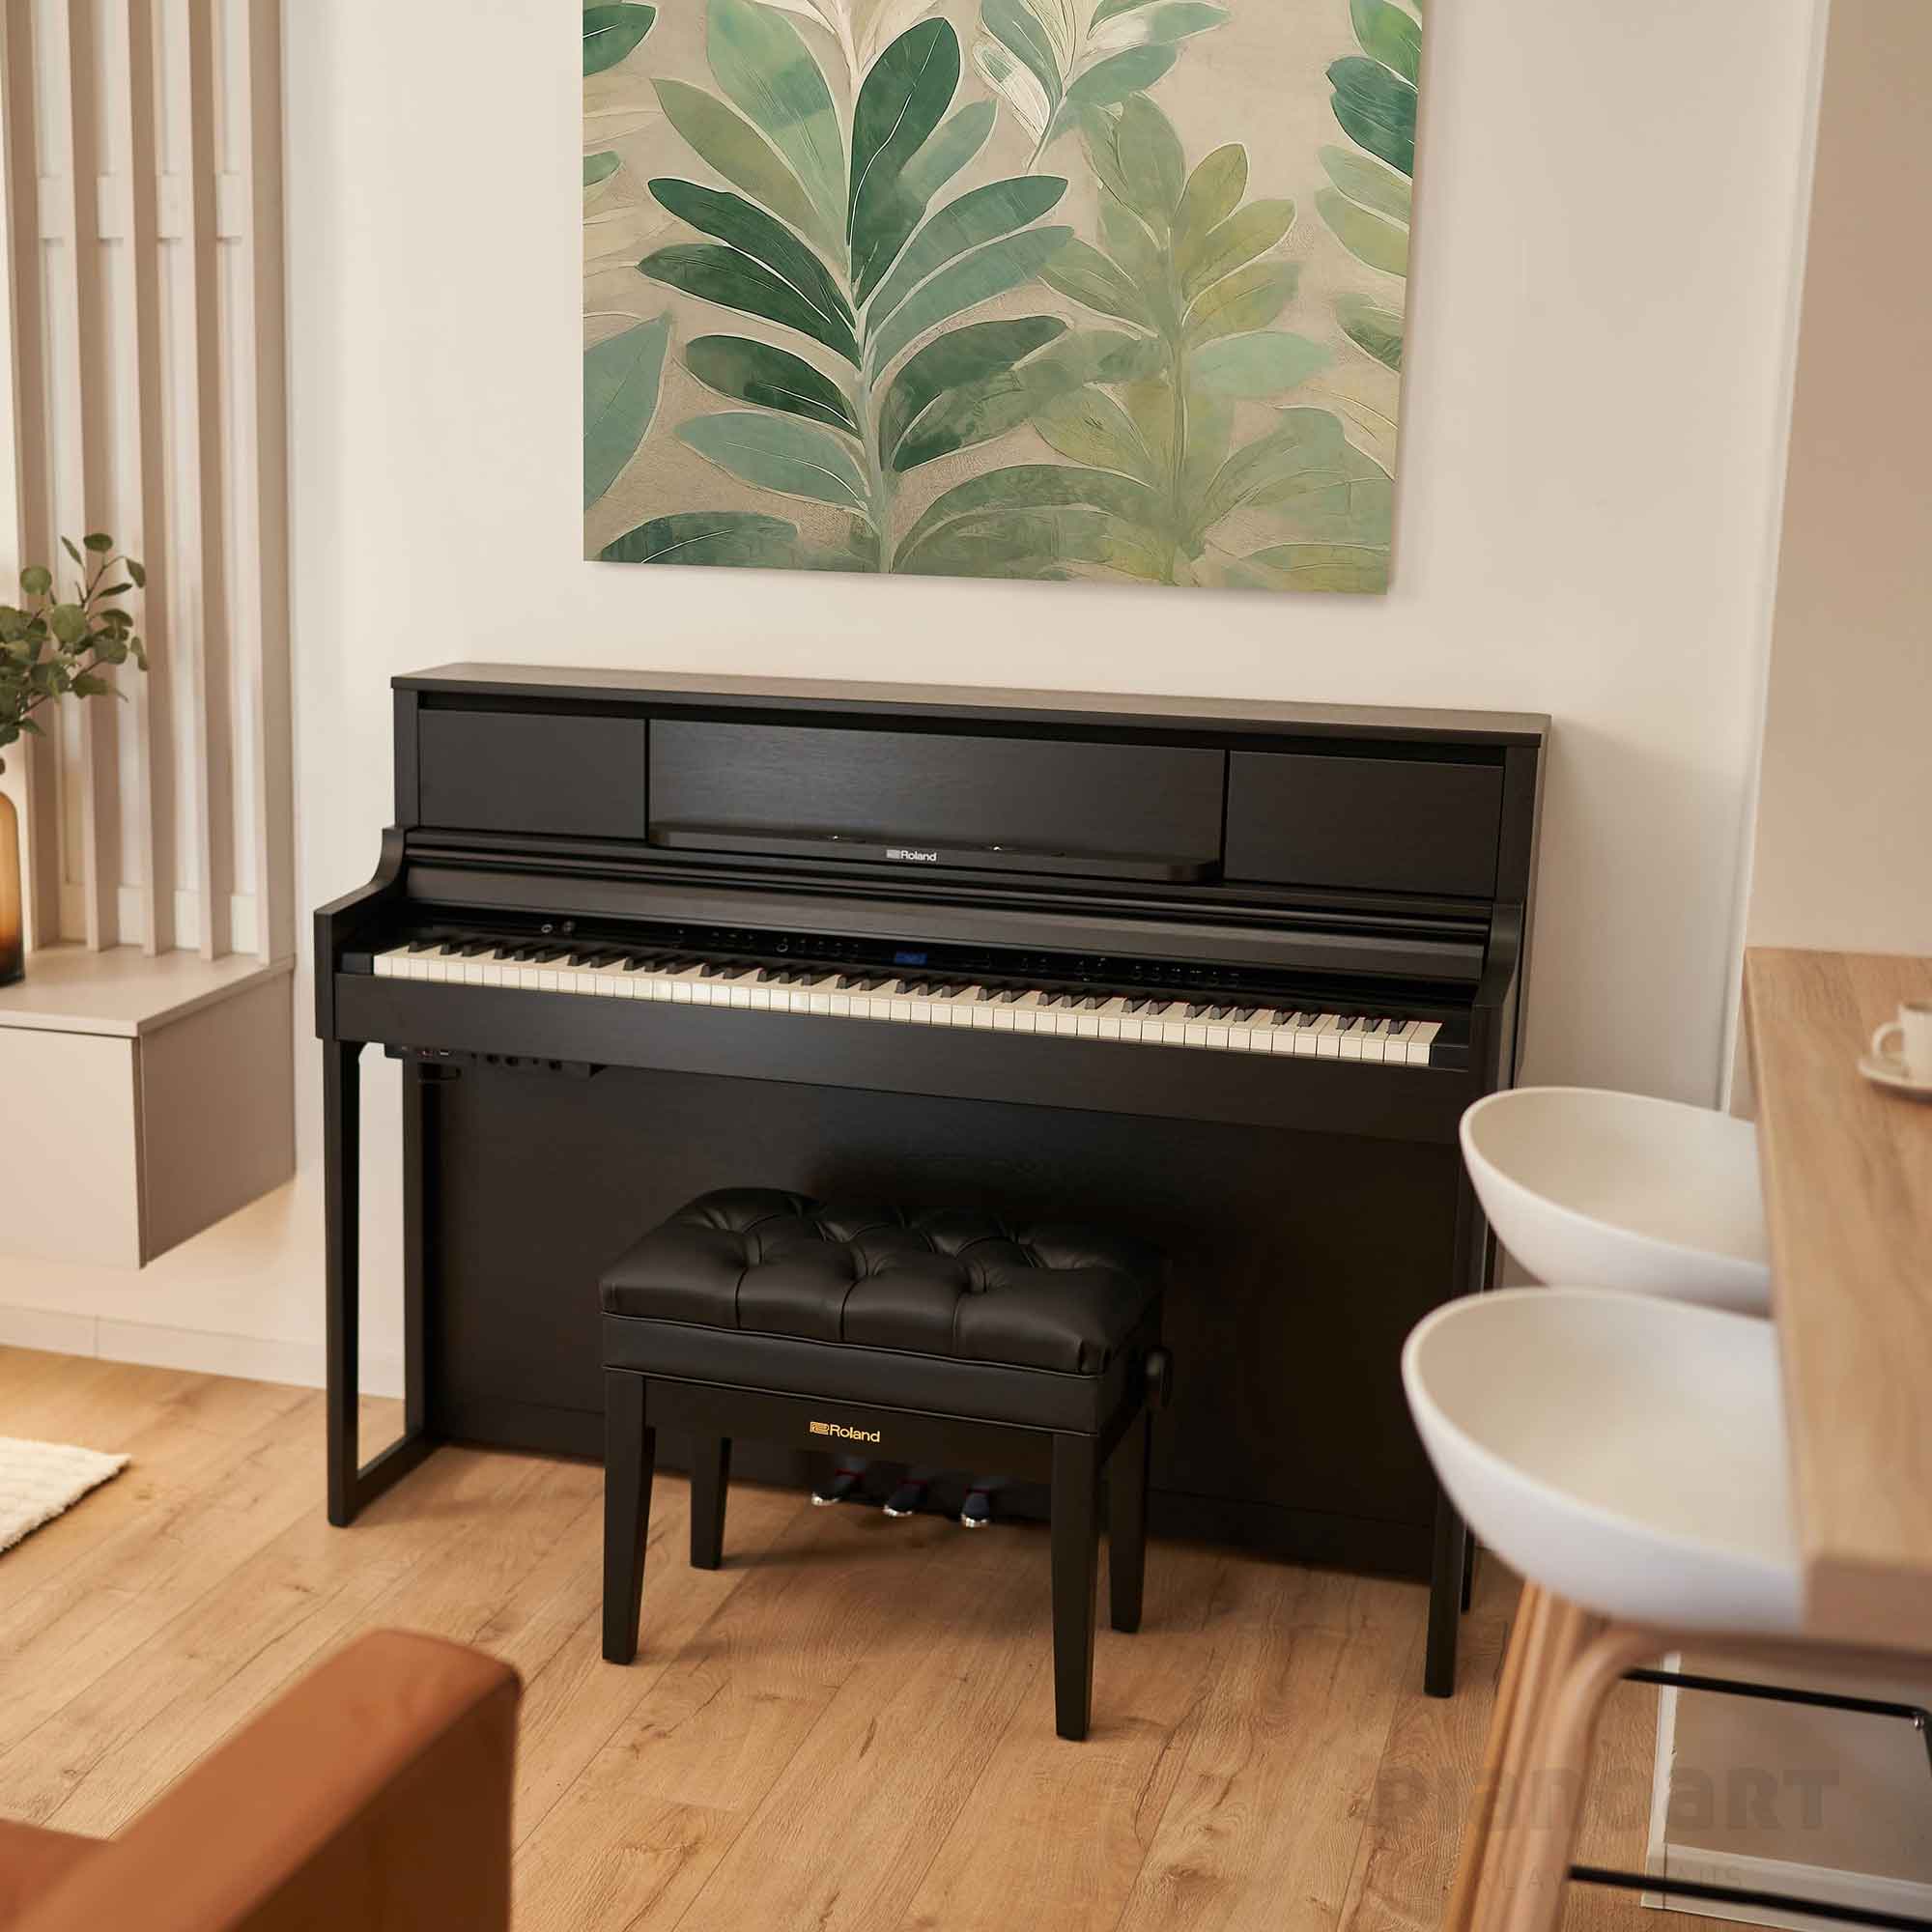 Roland LX-5 Digital Piano im Wohnzimmer mit Blätter-Tapete im Hintergrund